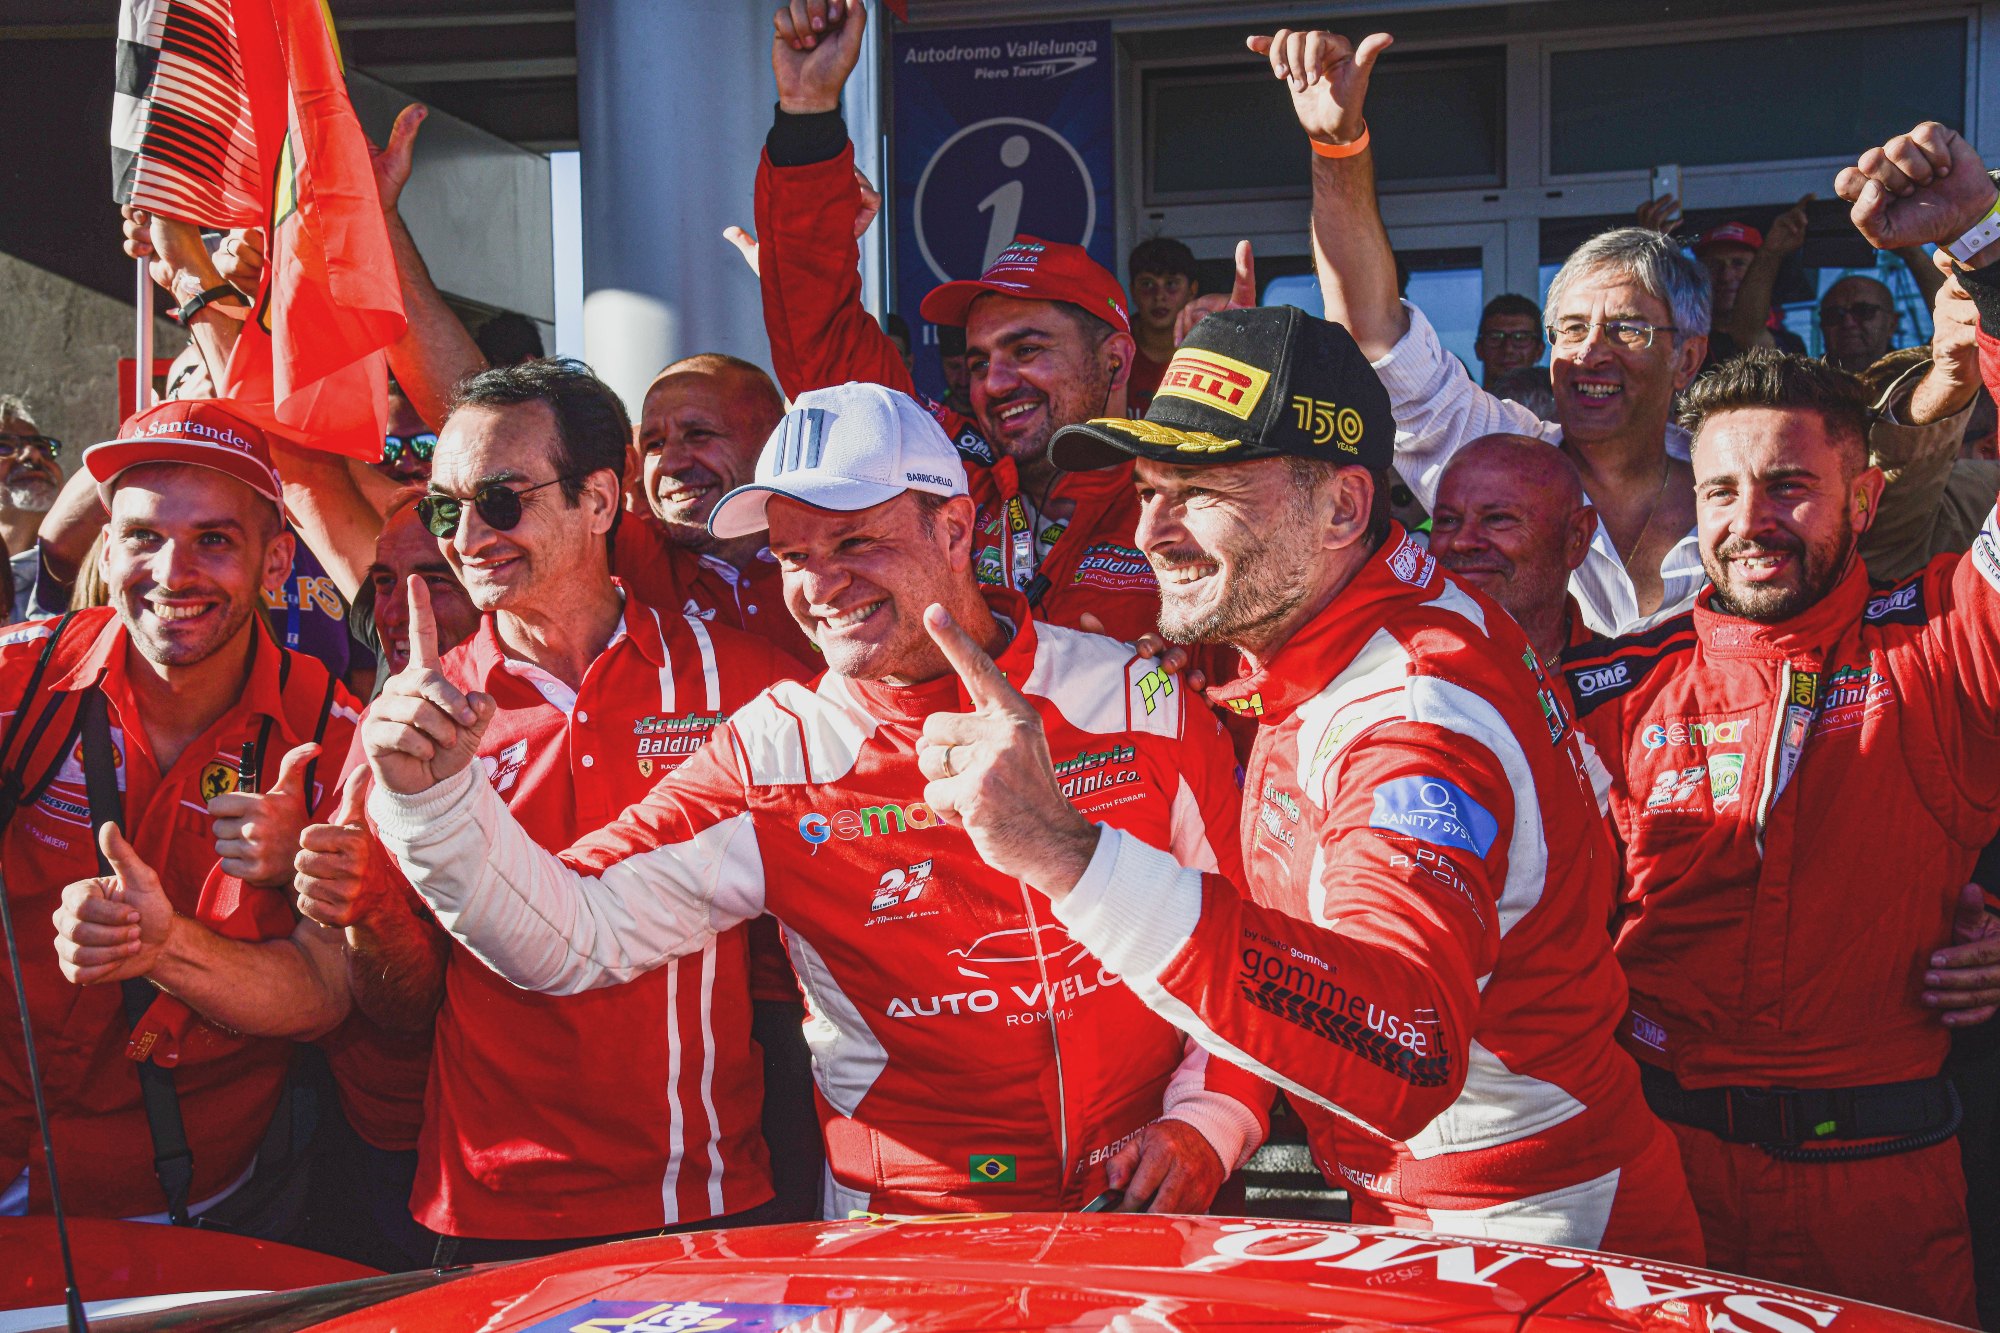 Rubens Barrichello e Giancarlo Fisichella, cercado por integrantes da escuderia Baldini, comemorando a vitória com o indicador levantado